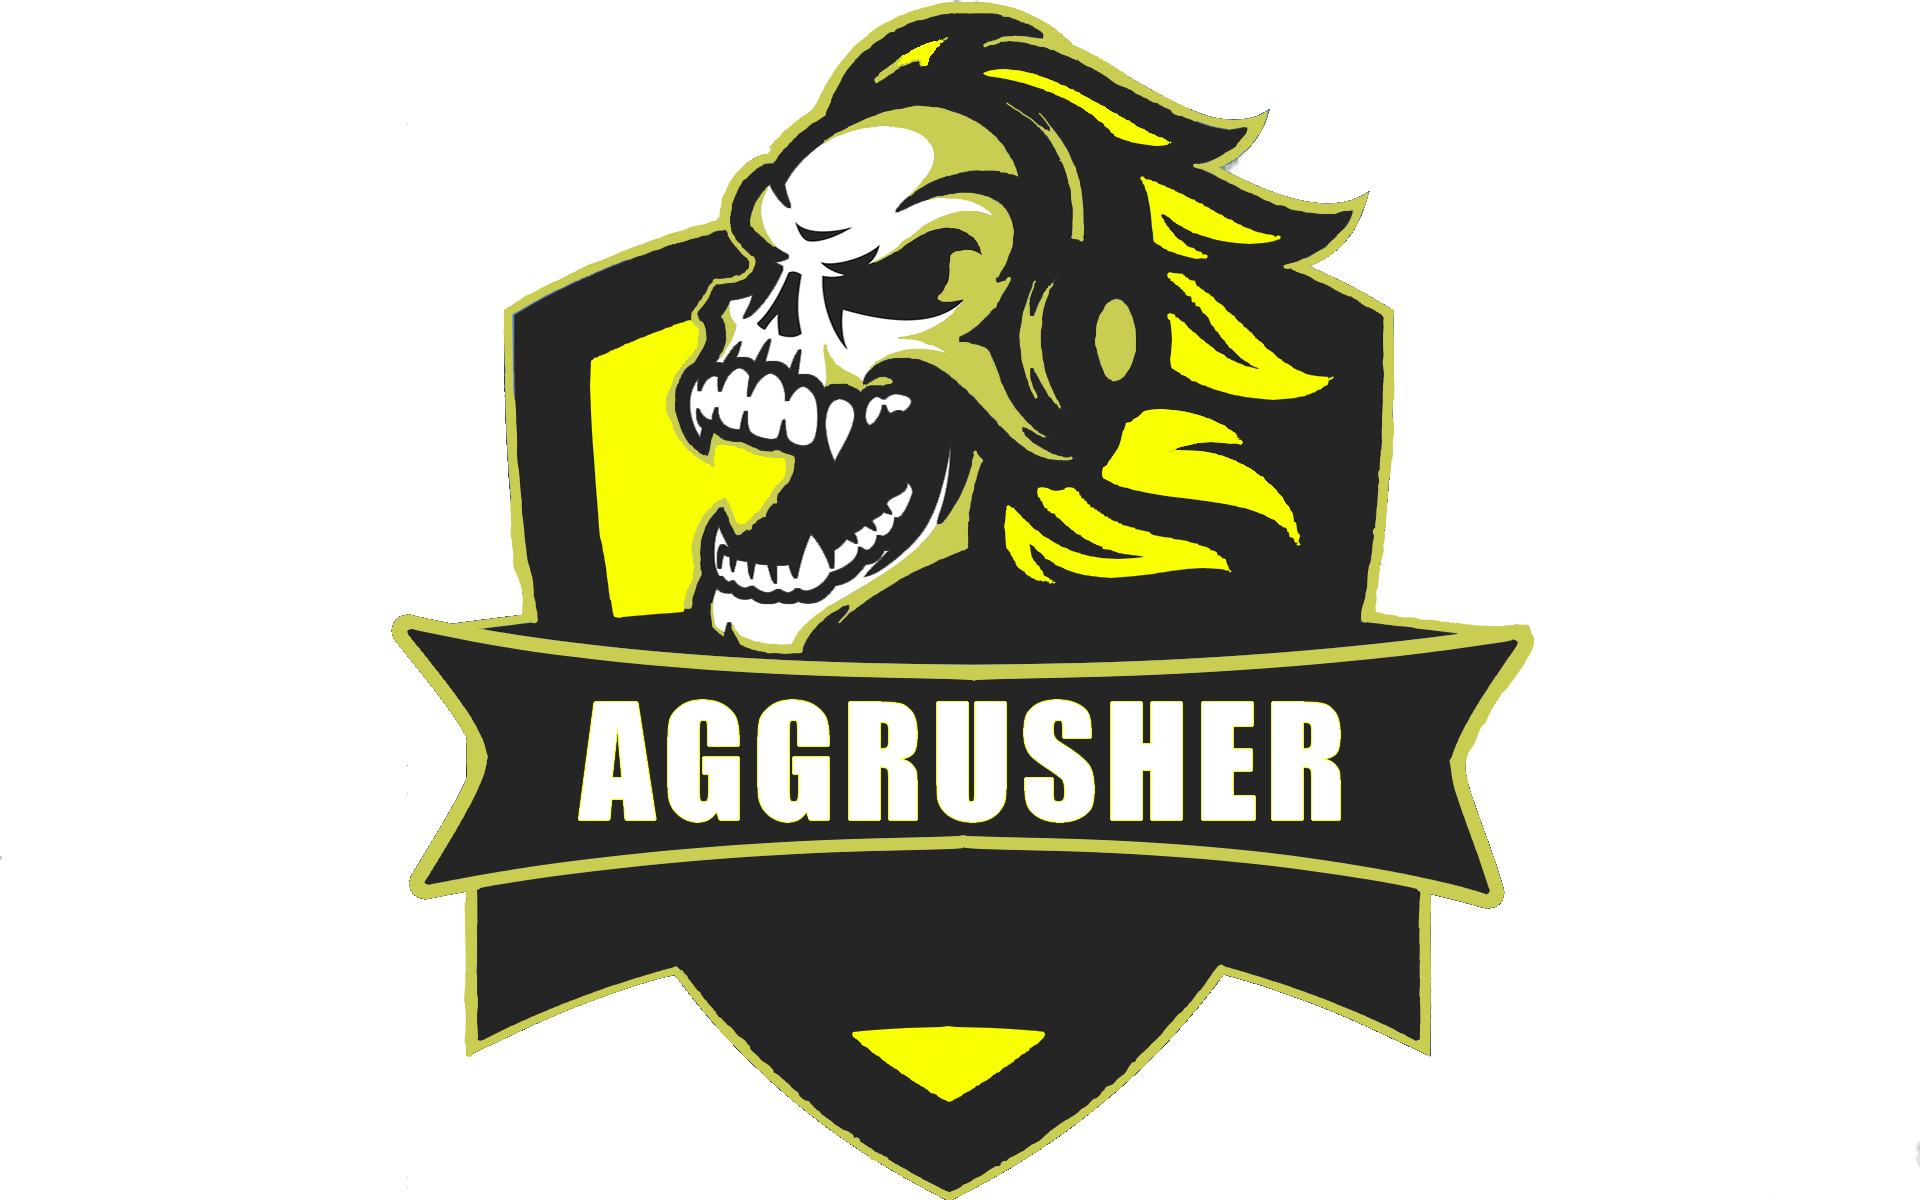 Aggrusher